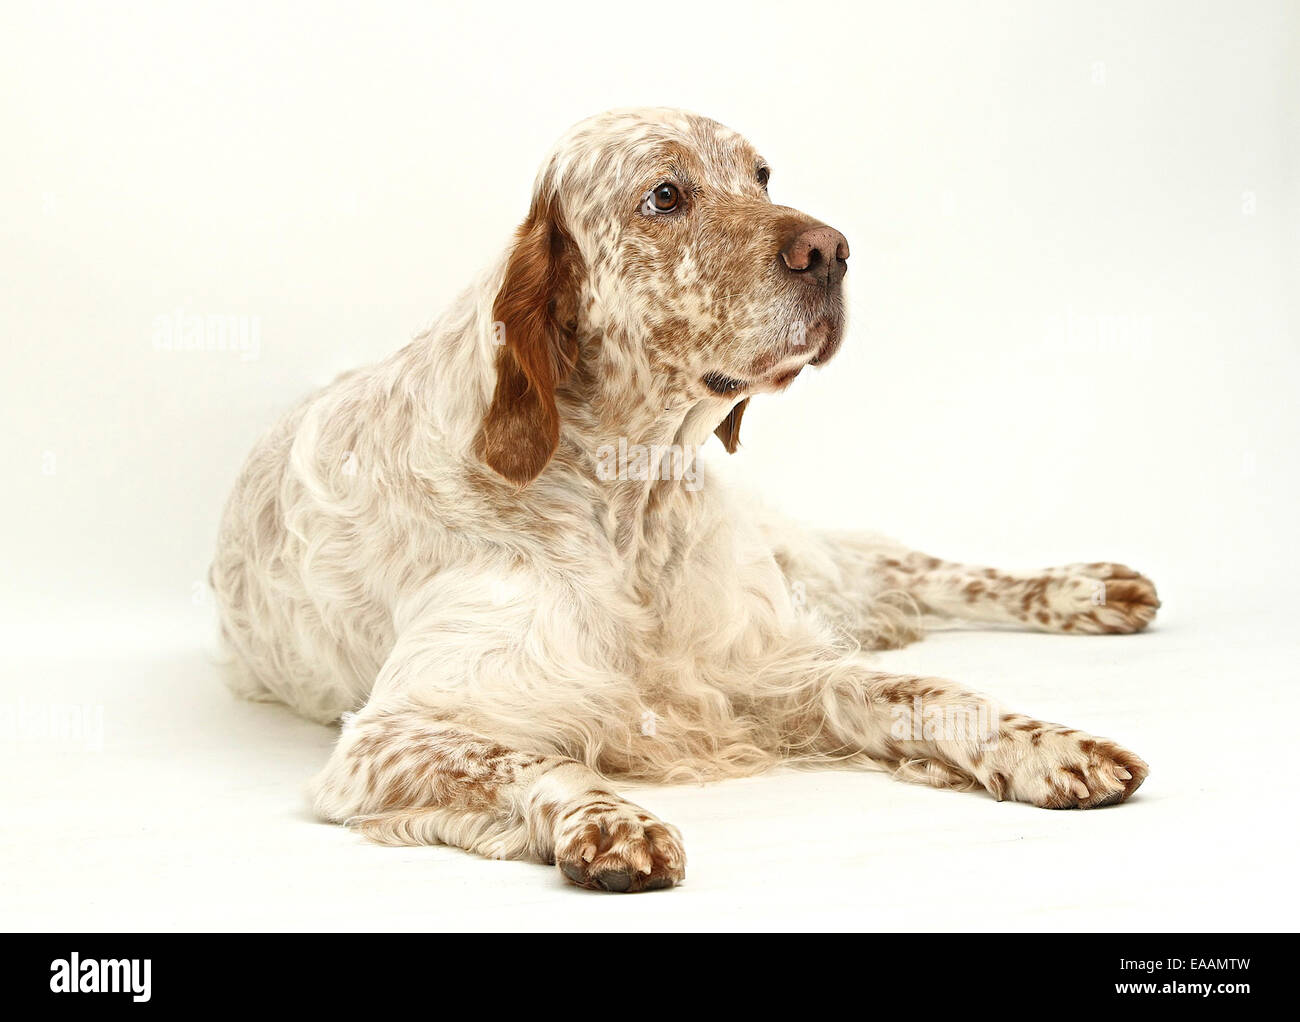 English Setter dog on white background Stock Photo